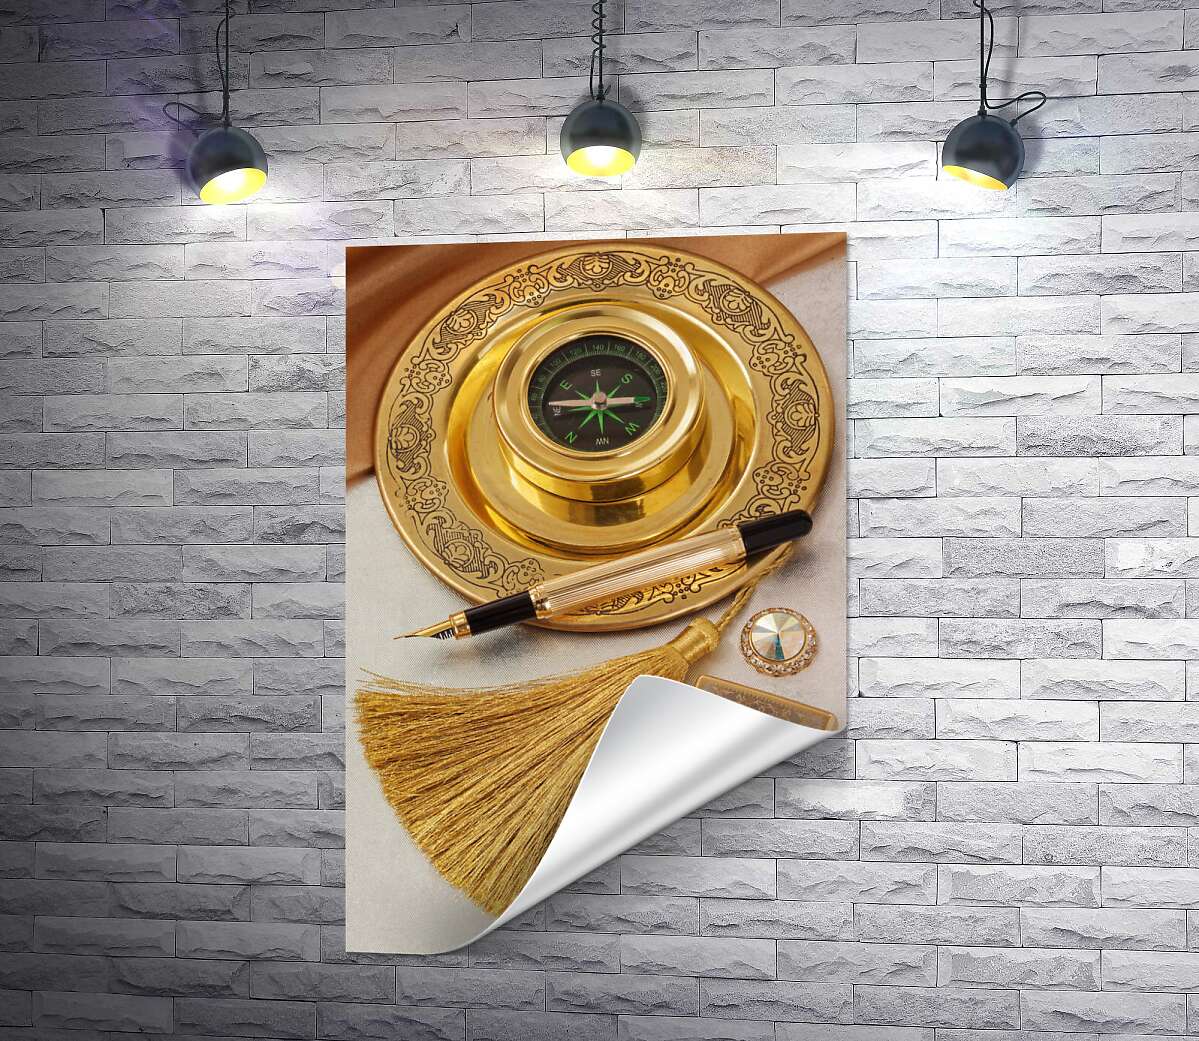 друк Компас на золотій таці поряд із вишуканою ручкою та дорогоцінною запальничкою